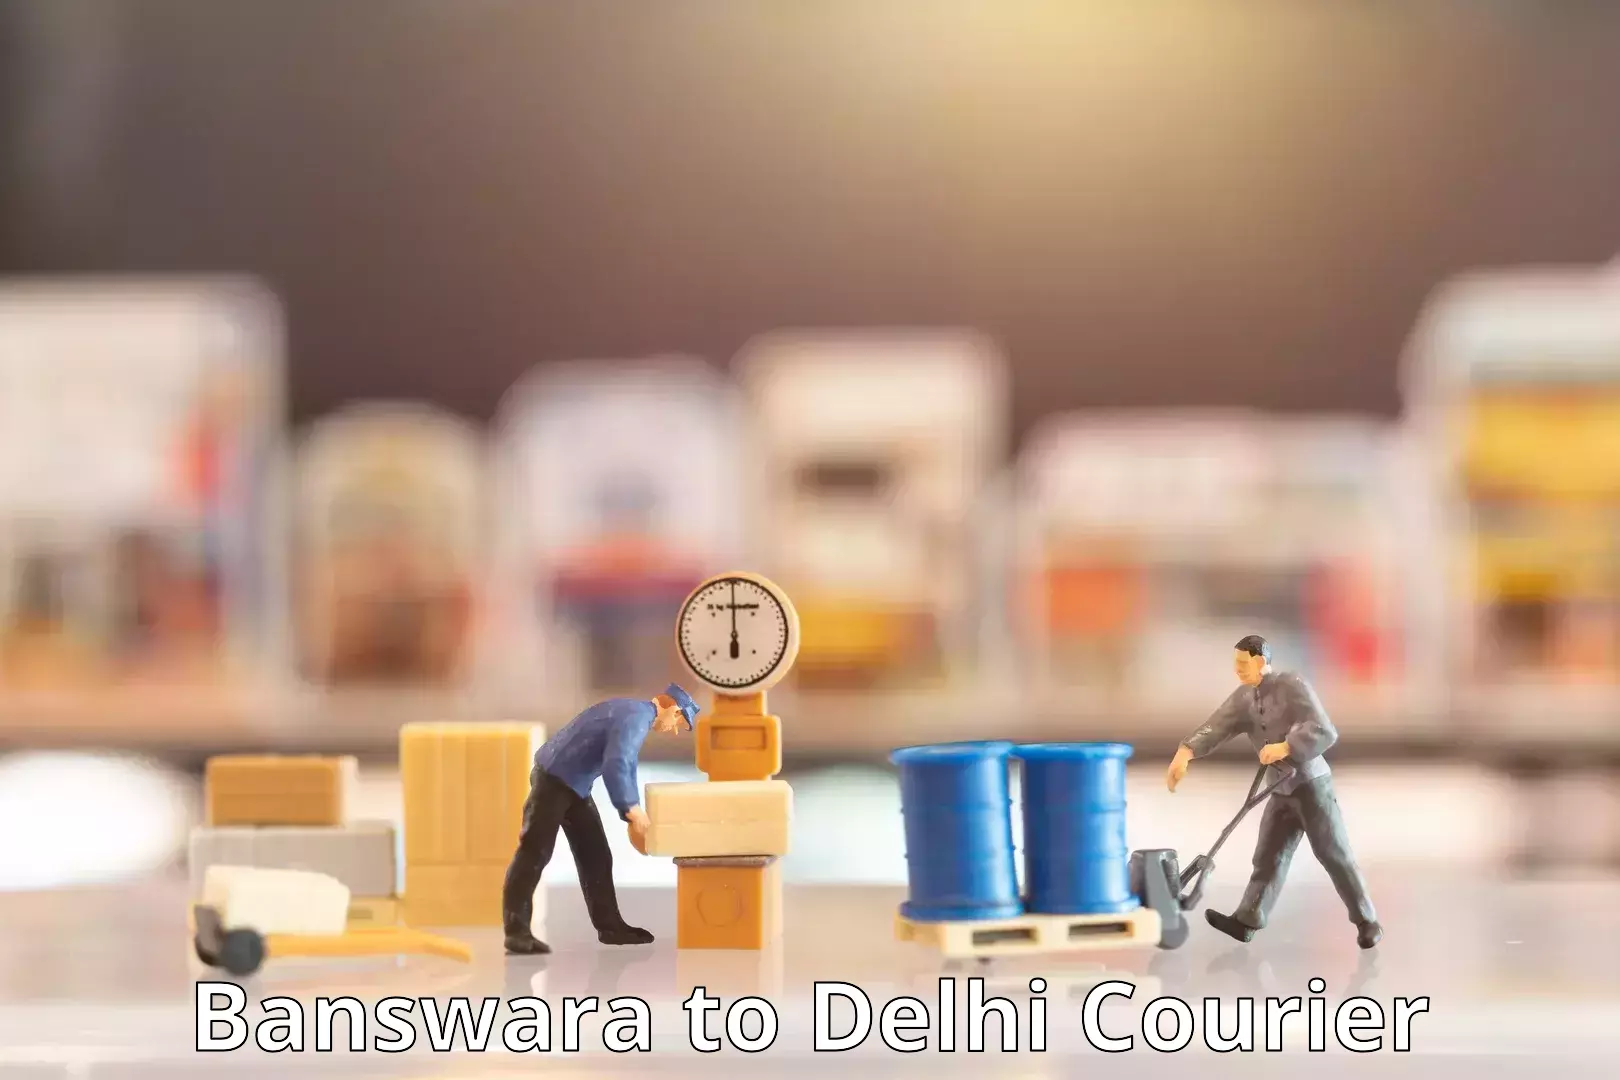 Doorstep delivery service Banswara to Delhi